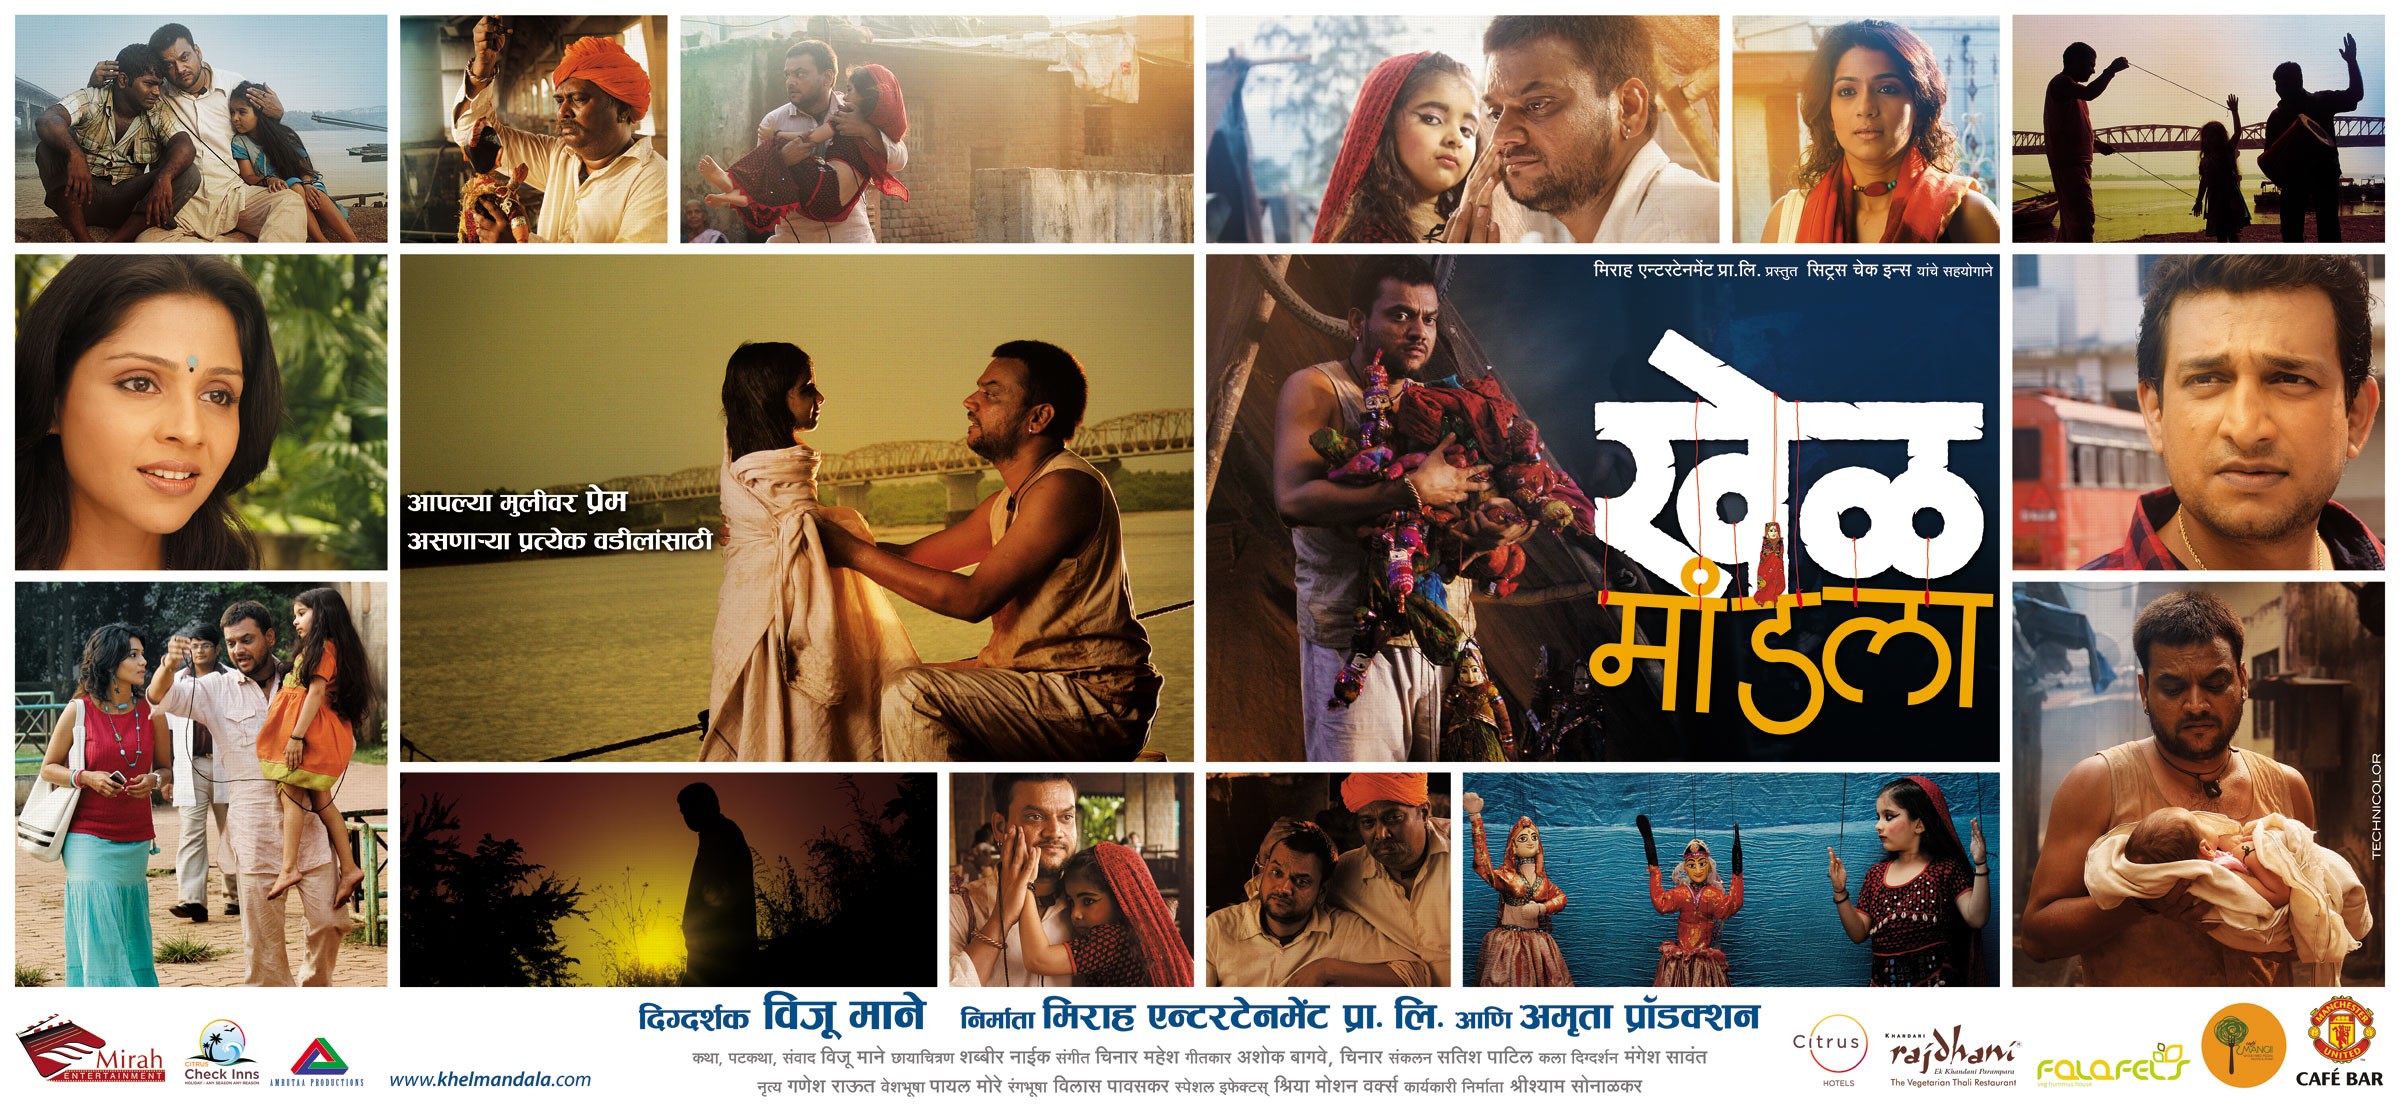 Mega Sized Movie Poster Image for Khel Mandala (#13 of 13)